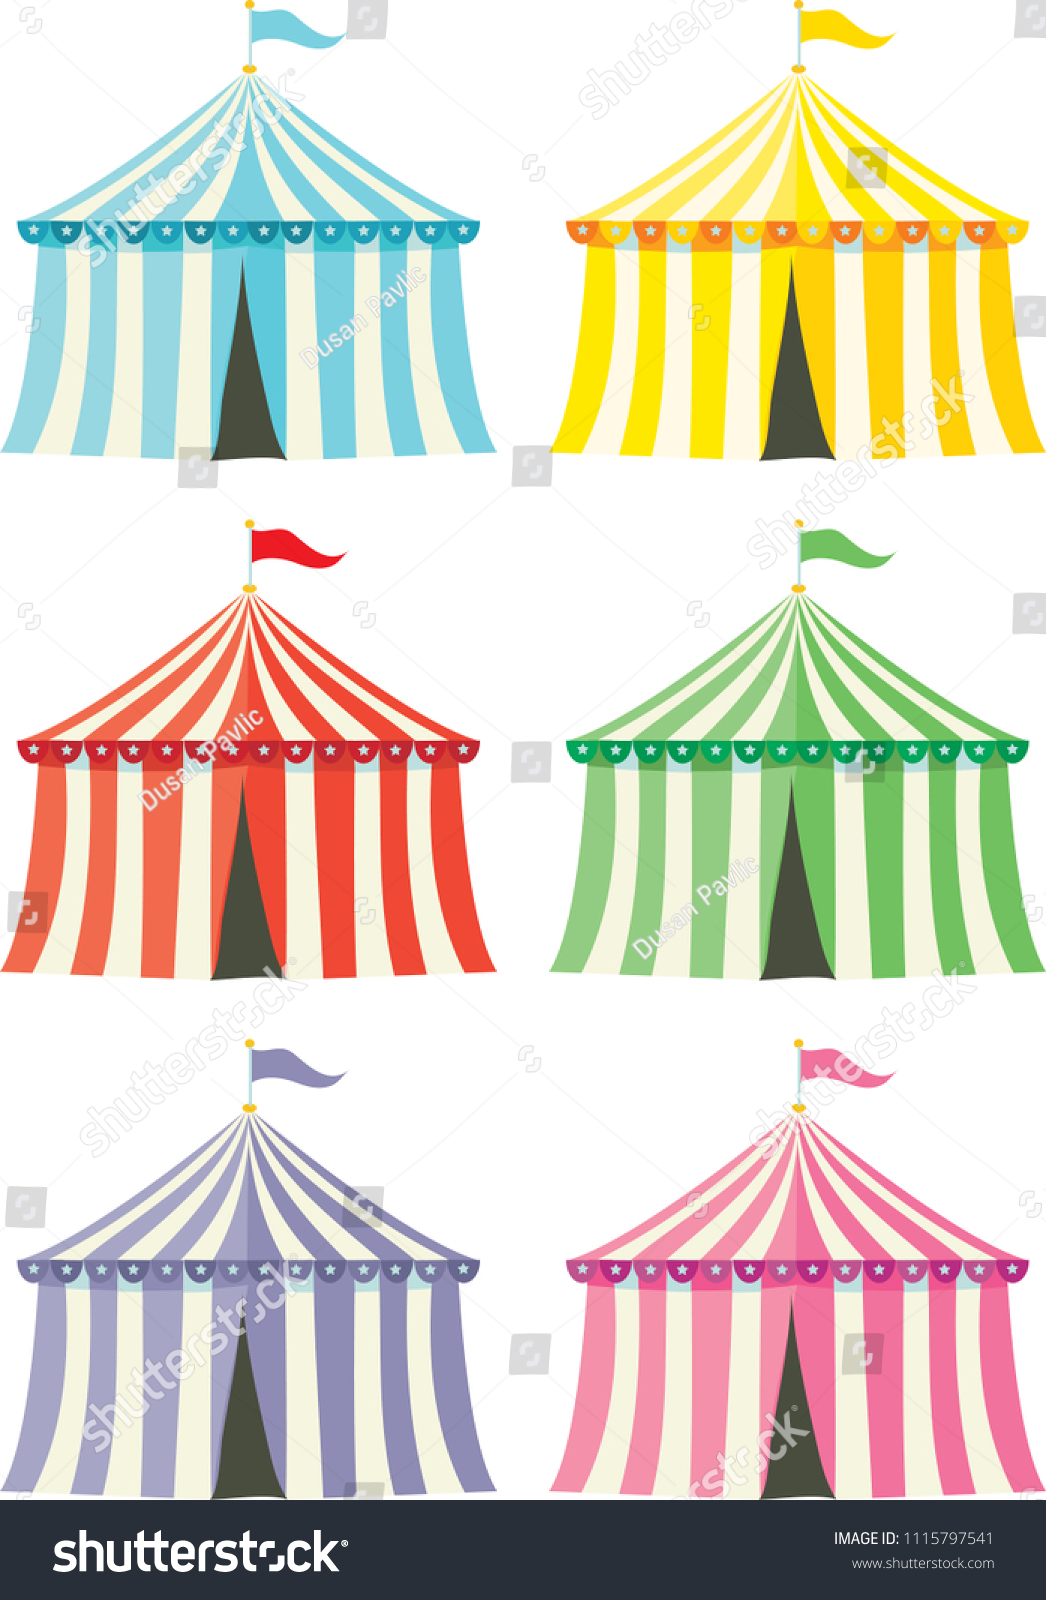 Сине зеленый цирковой шатер